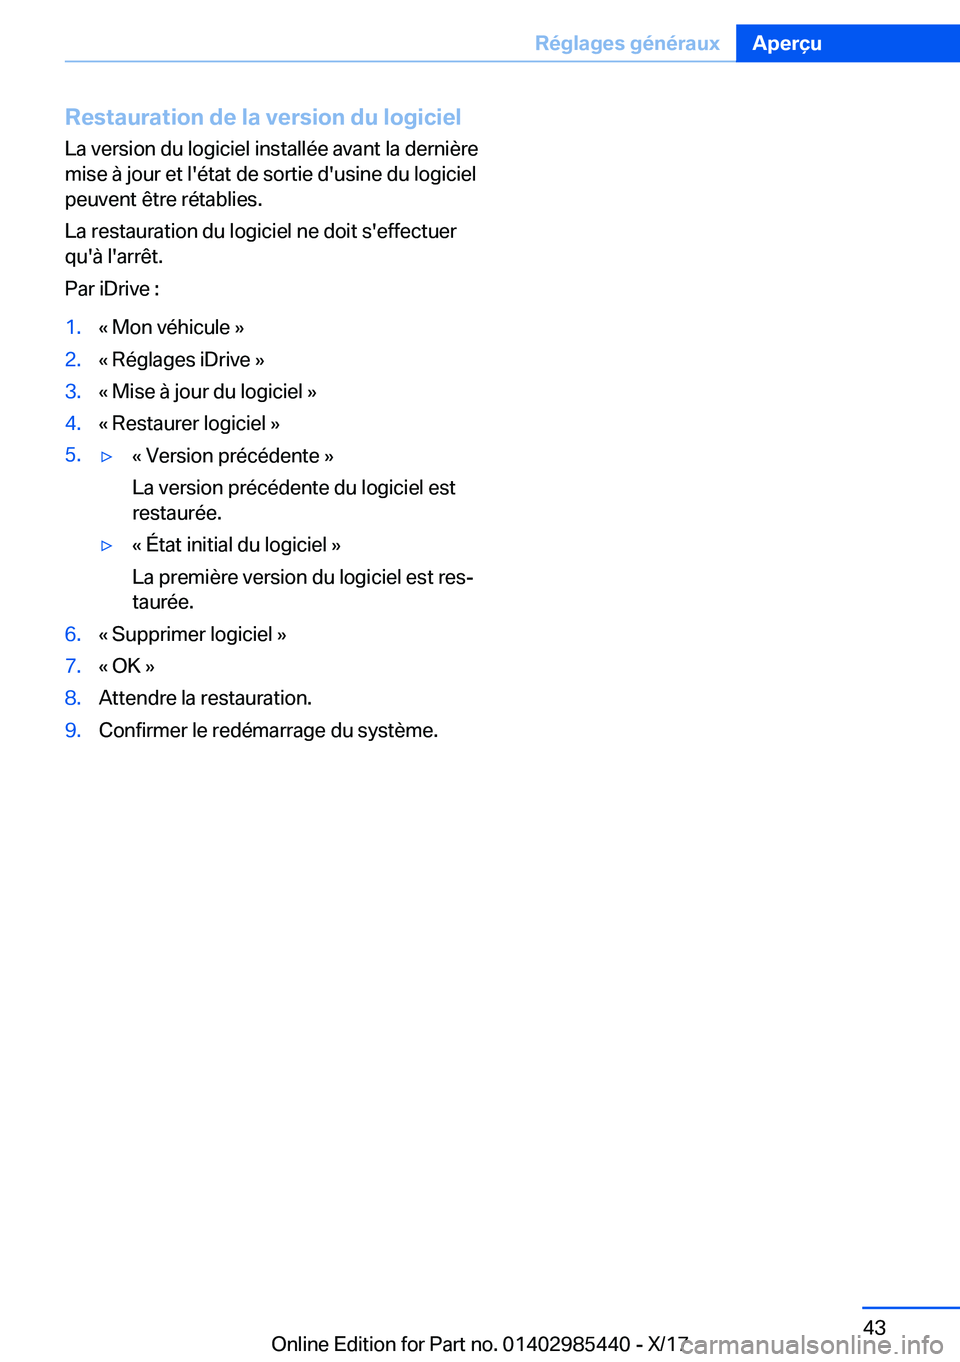 BMW X1 2018  Notices Demploi (in French) �R�e�s�t�a�u�r�a�t�i�o�n��d�e��l�a��v�e�r�s�i�o�n��d�u��l�o�g�i�c�i�e�l
�L�a� �v�e�r�s�i�o�n� �d�u� �l�o�g�i�c�i�e�l� �i�n�s�t�a�l�l�é�e� �a�v�a�n�t� �l�a� �d�e�r�n�i�è�r�e
�m�i�s�e� �